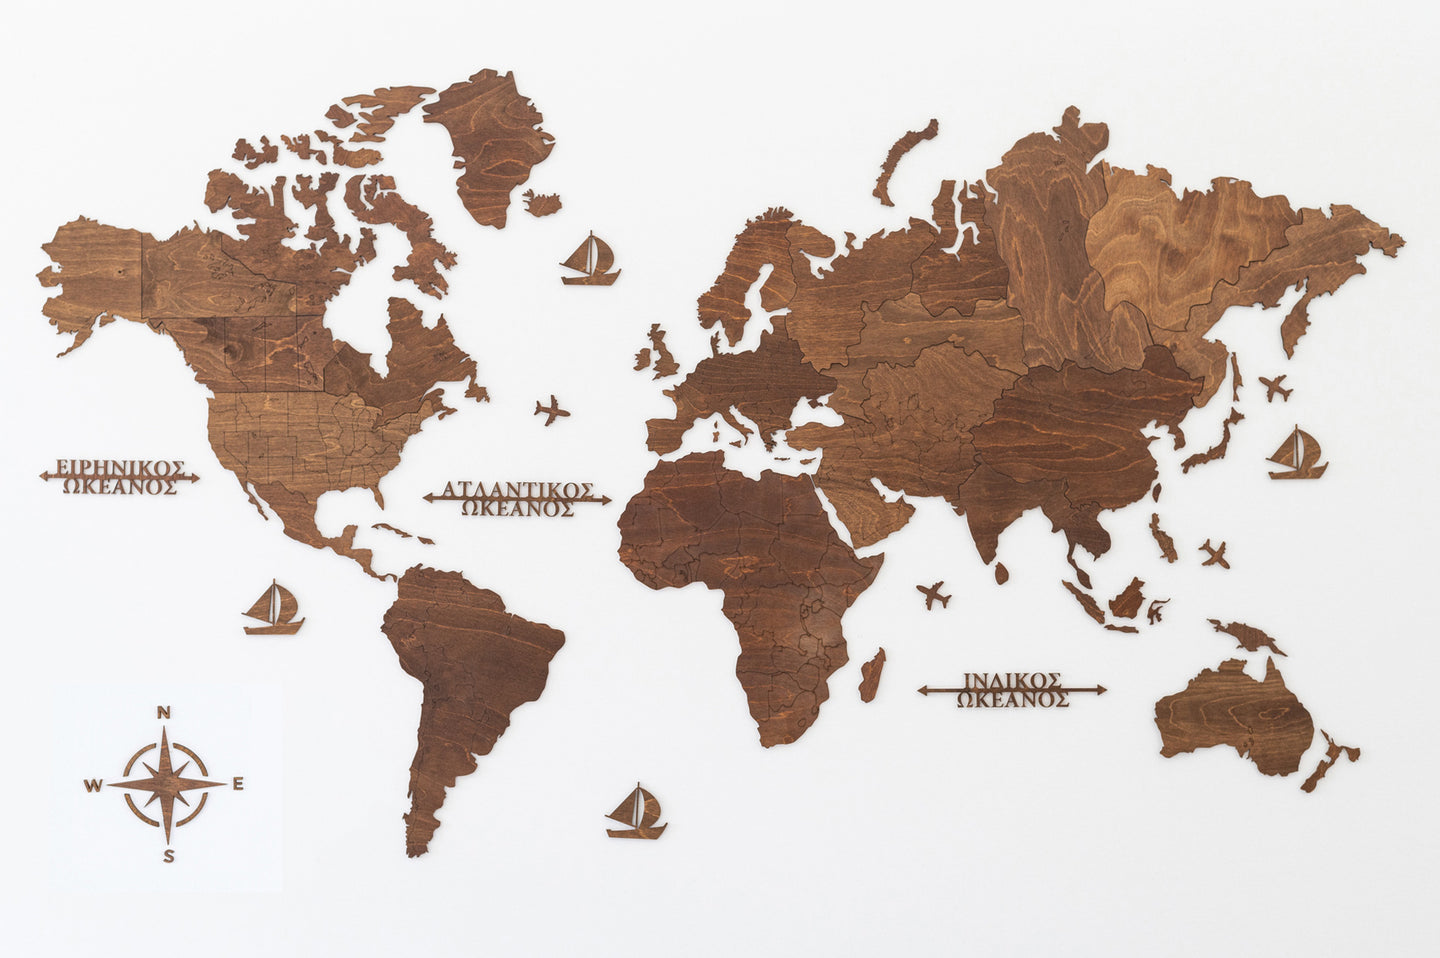 Ξύλινος παγκόσμιος χάρτης τοίχου ΚΑΣΤΑΝΙΑ - (190 x 110) / Κενός